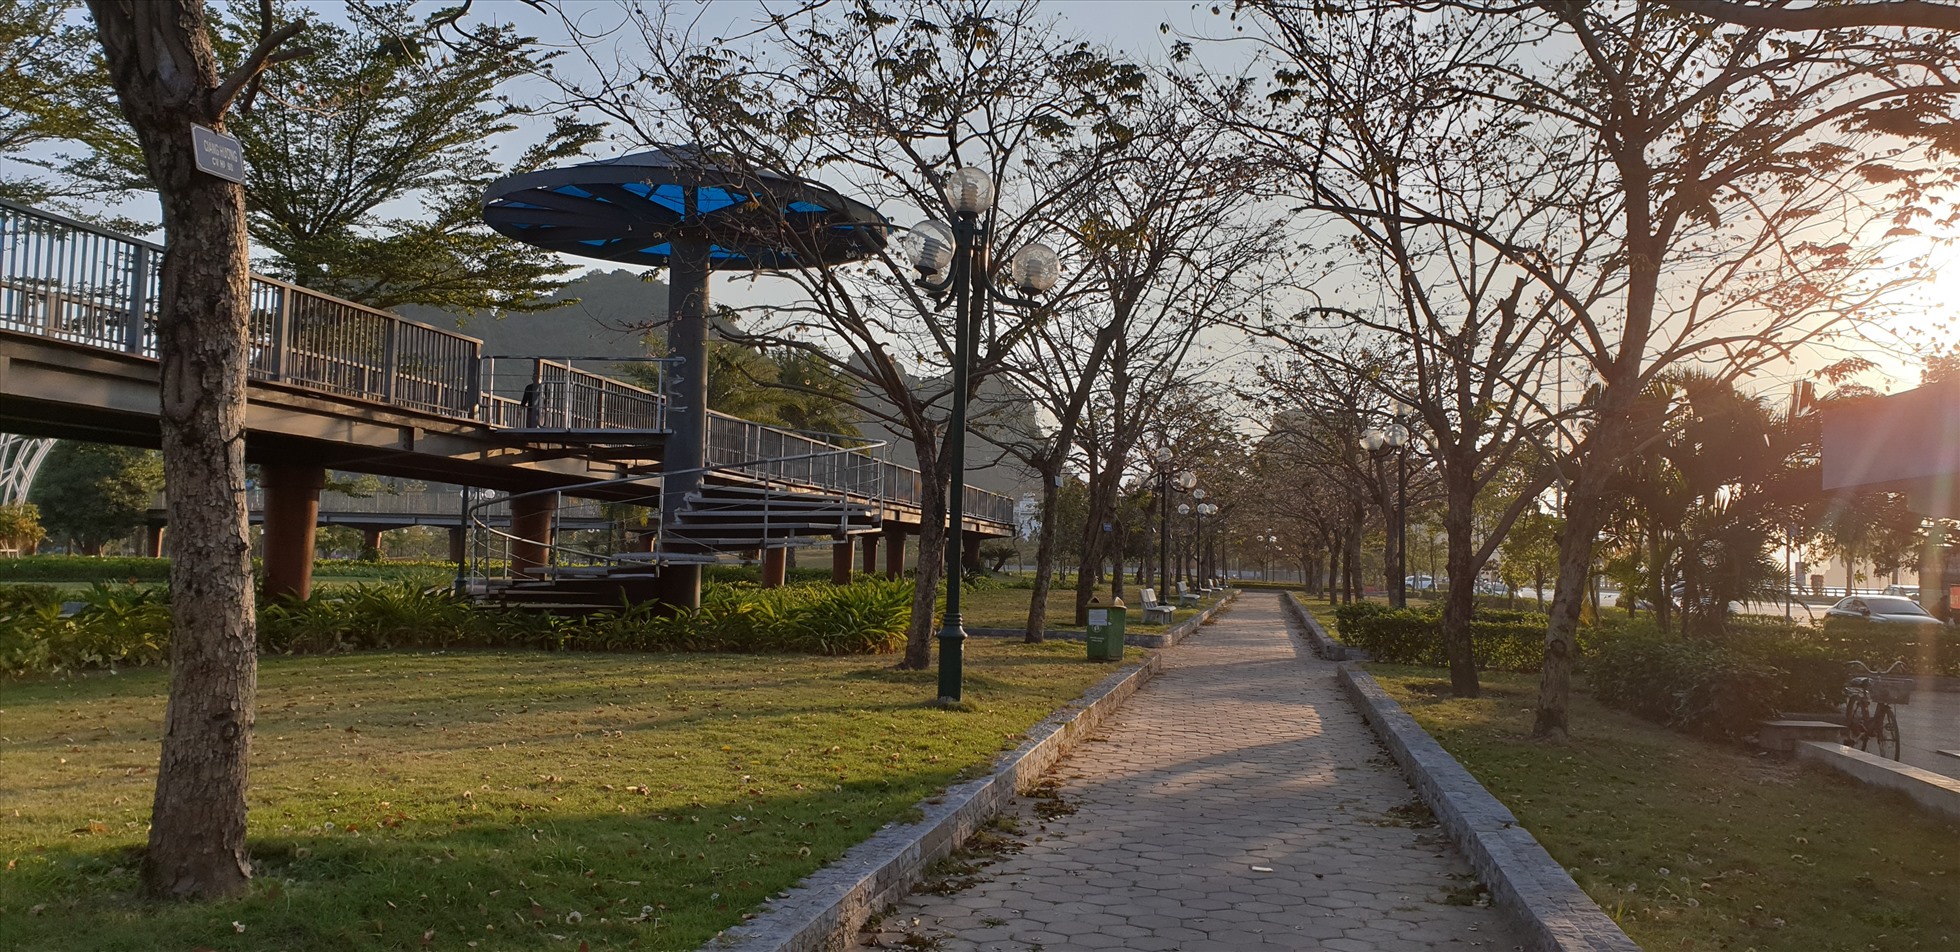 Công viên hoa Hạ Long được đánh giá là một trong những công viên đẹp nhất cả nước. Ảnh: Nguyễn Hùng